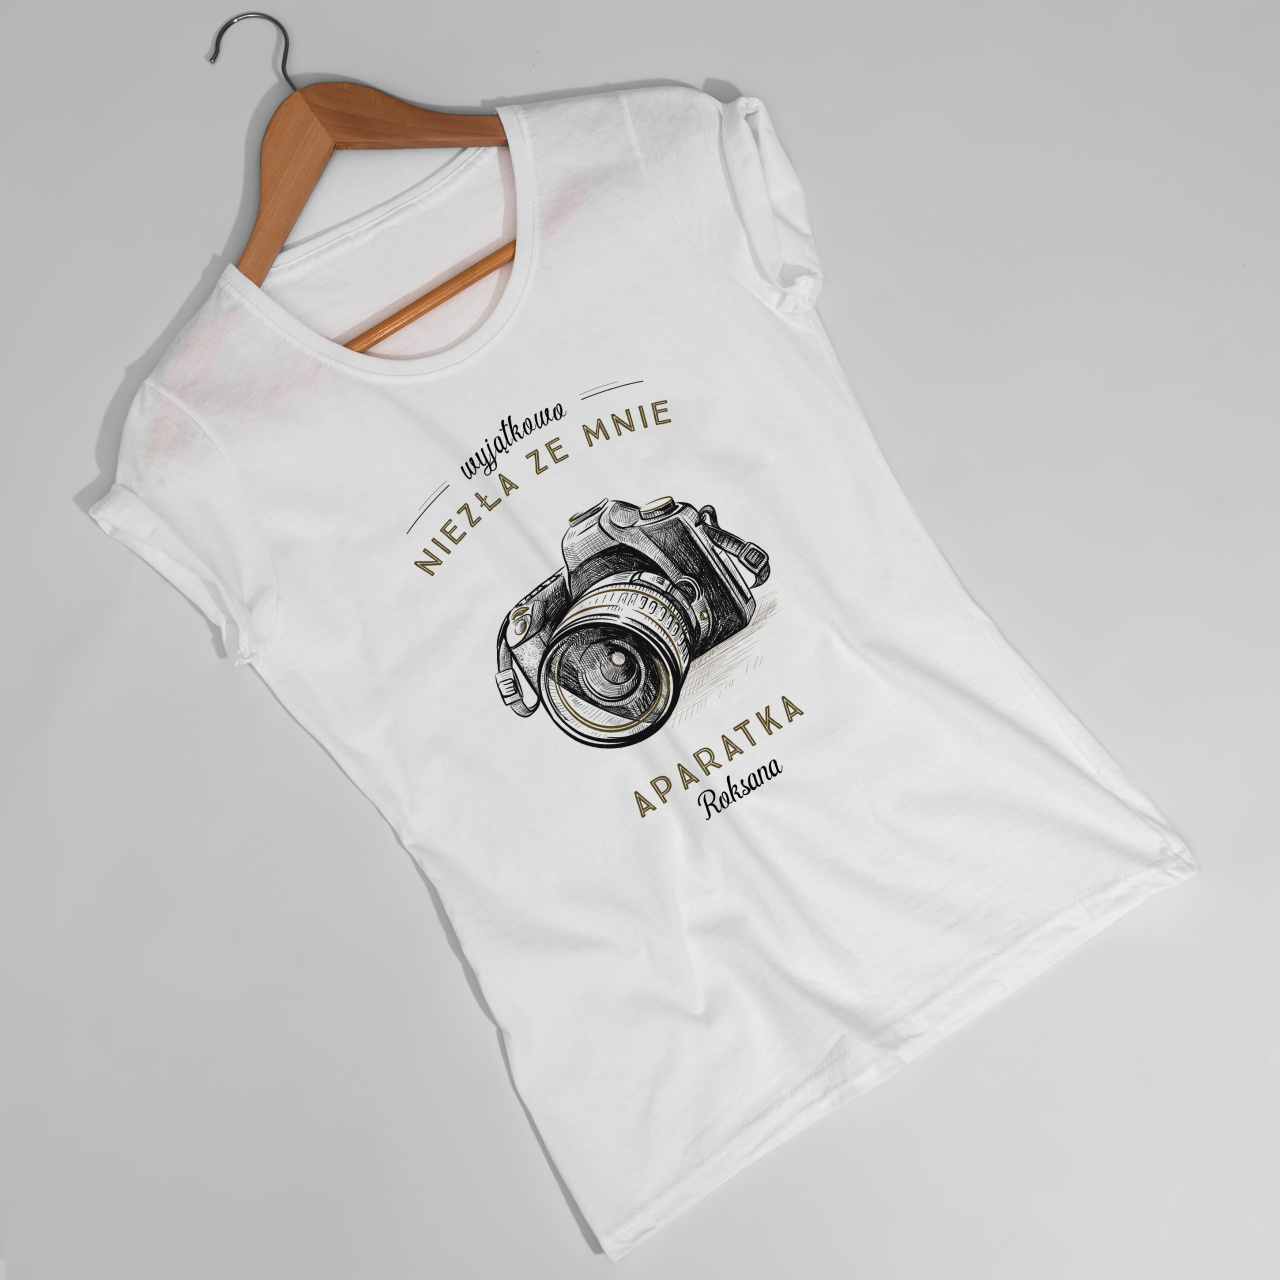 Koszulka damska z nadrukiem APARATKA prezent dla fotografki - M